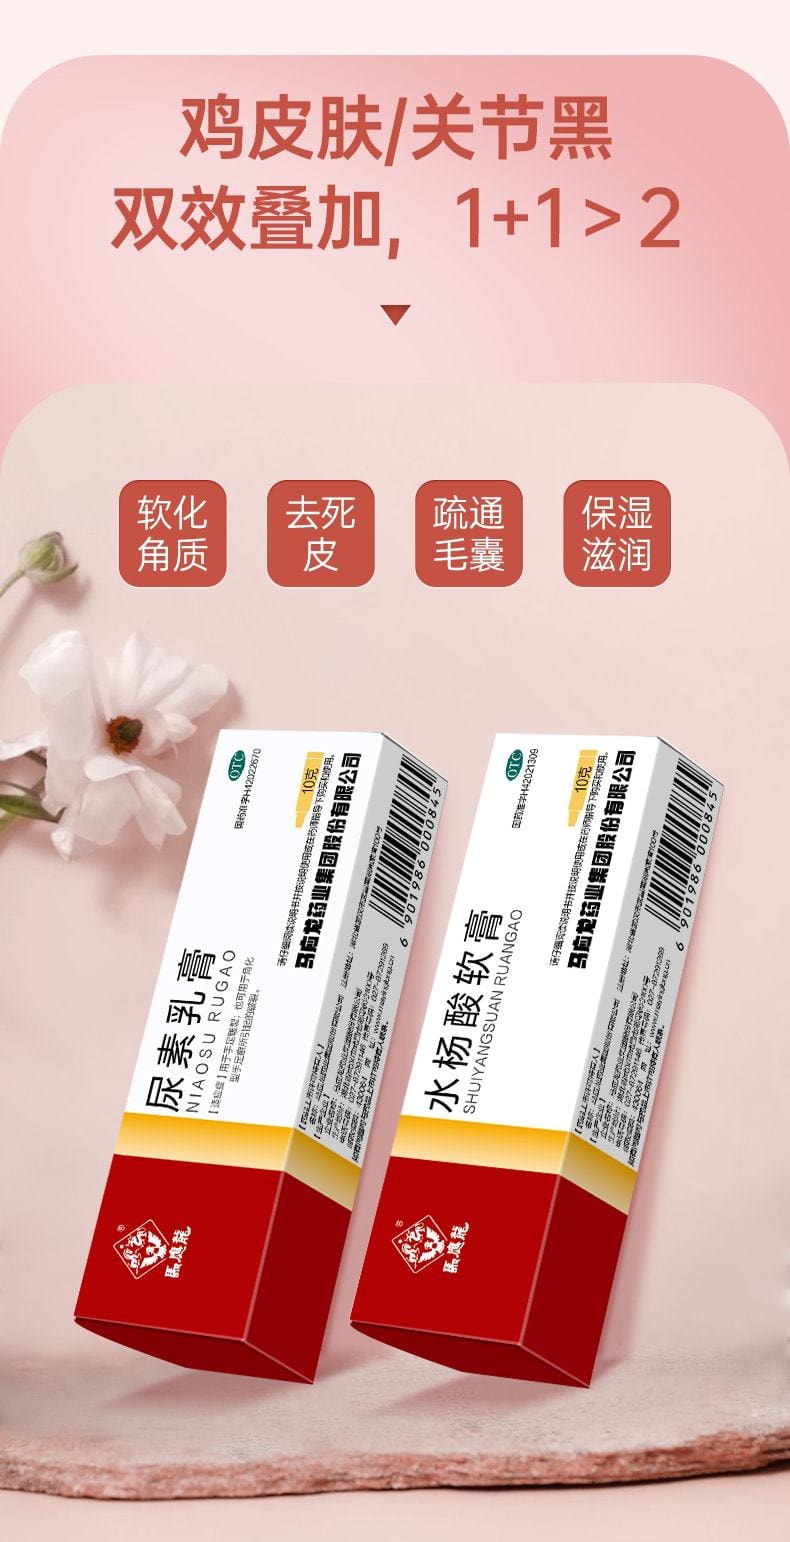 中國 馬應龍 水楊酸軟膏 適用於頭癬足癬去角質增生去雞皮尿素 10g/盒(小紅書達人推薦)